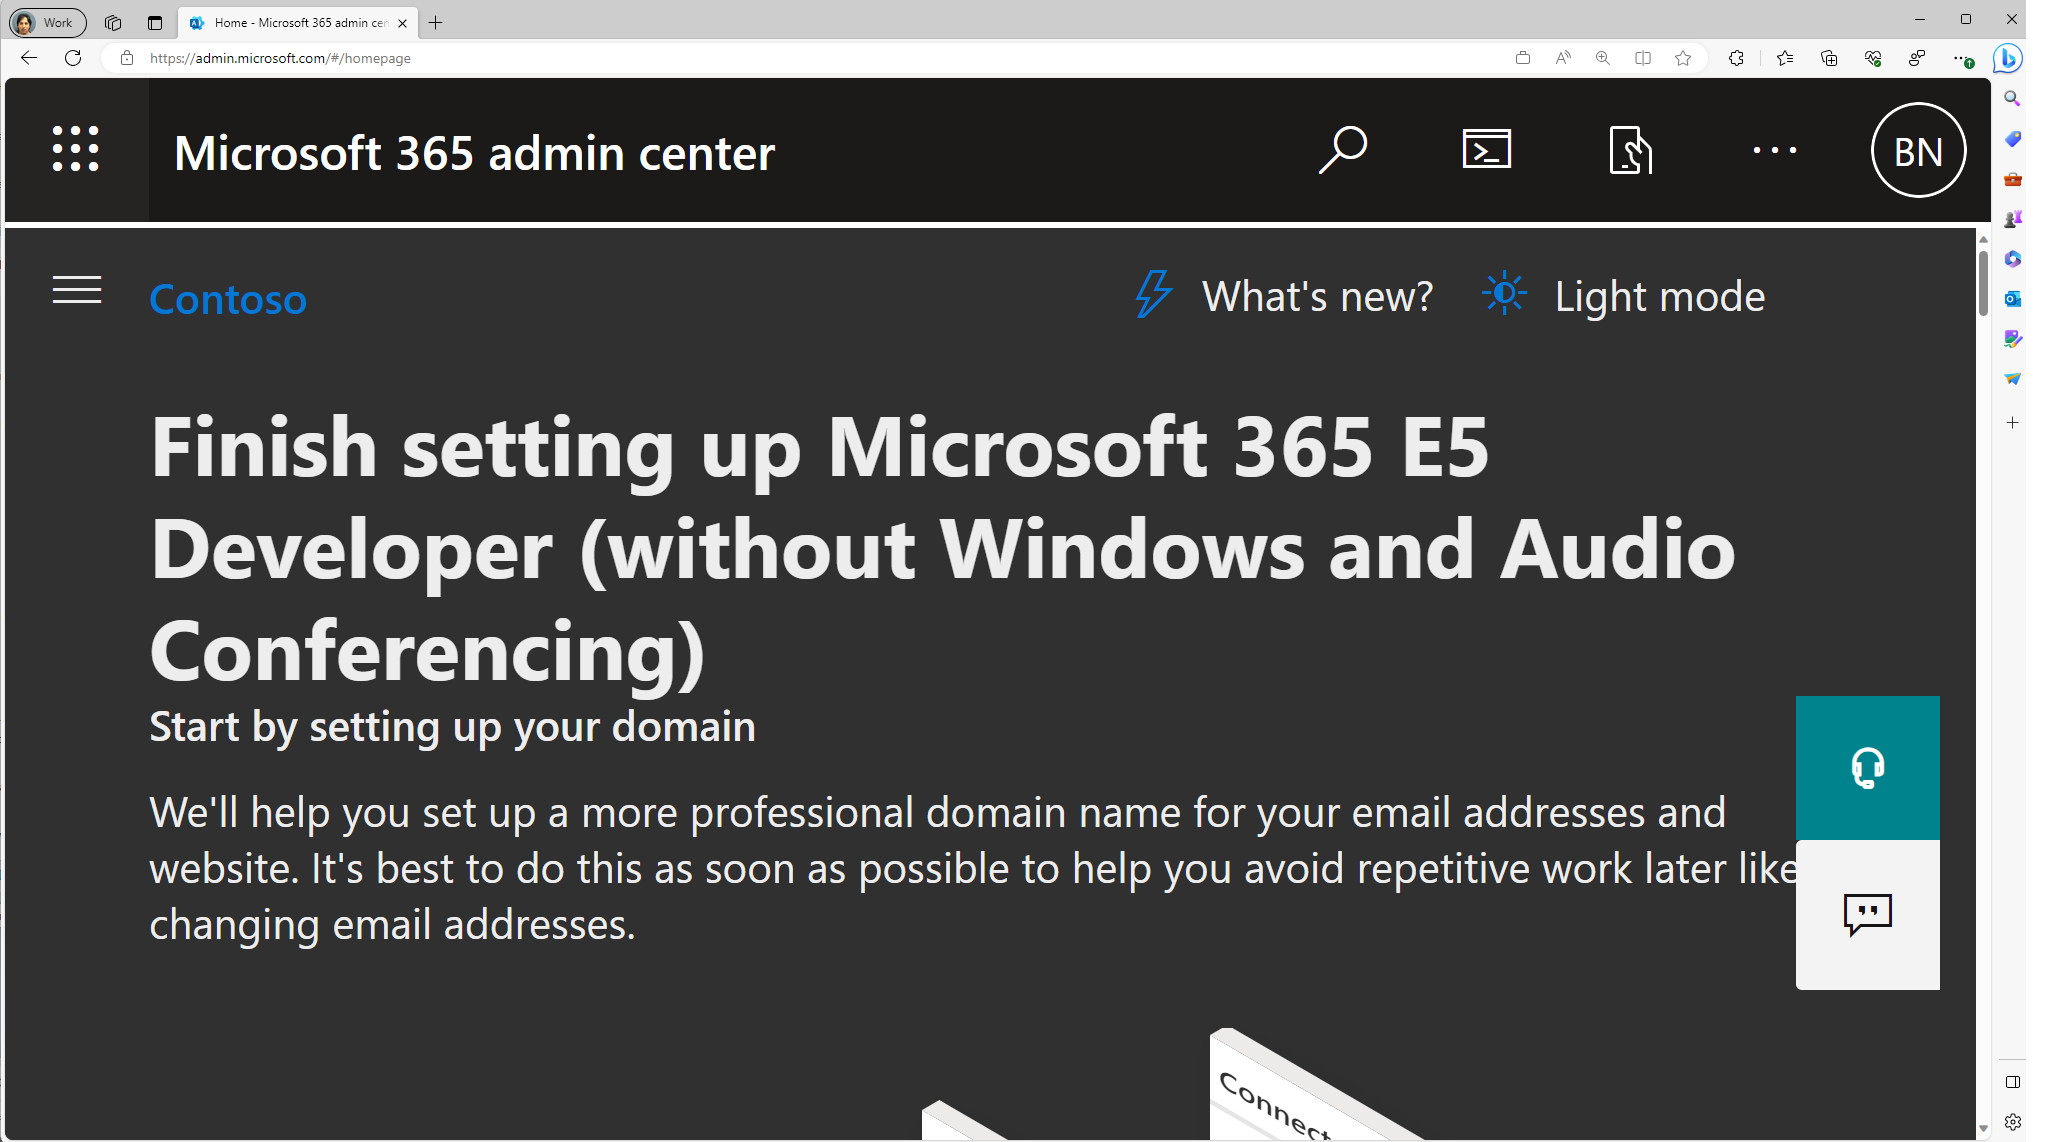 Captura de pantalla de la página de aterrizaje del Centro de administración de Microsoft.